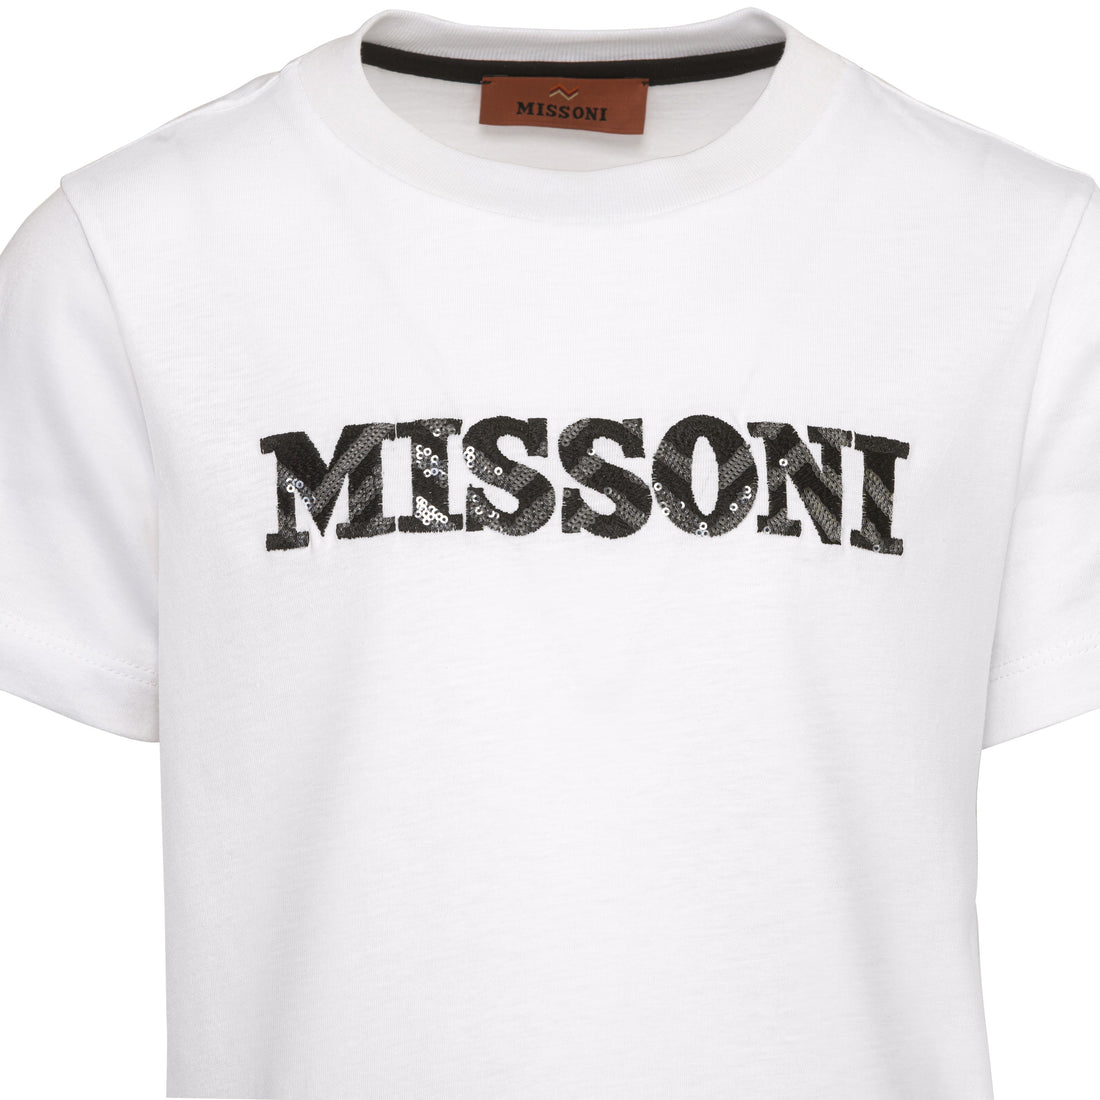 Missoni Cotton T-Shirt/Top | Schools Out